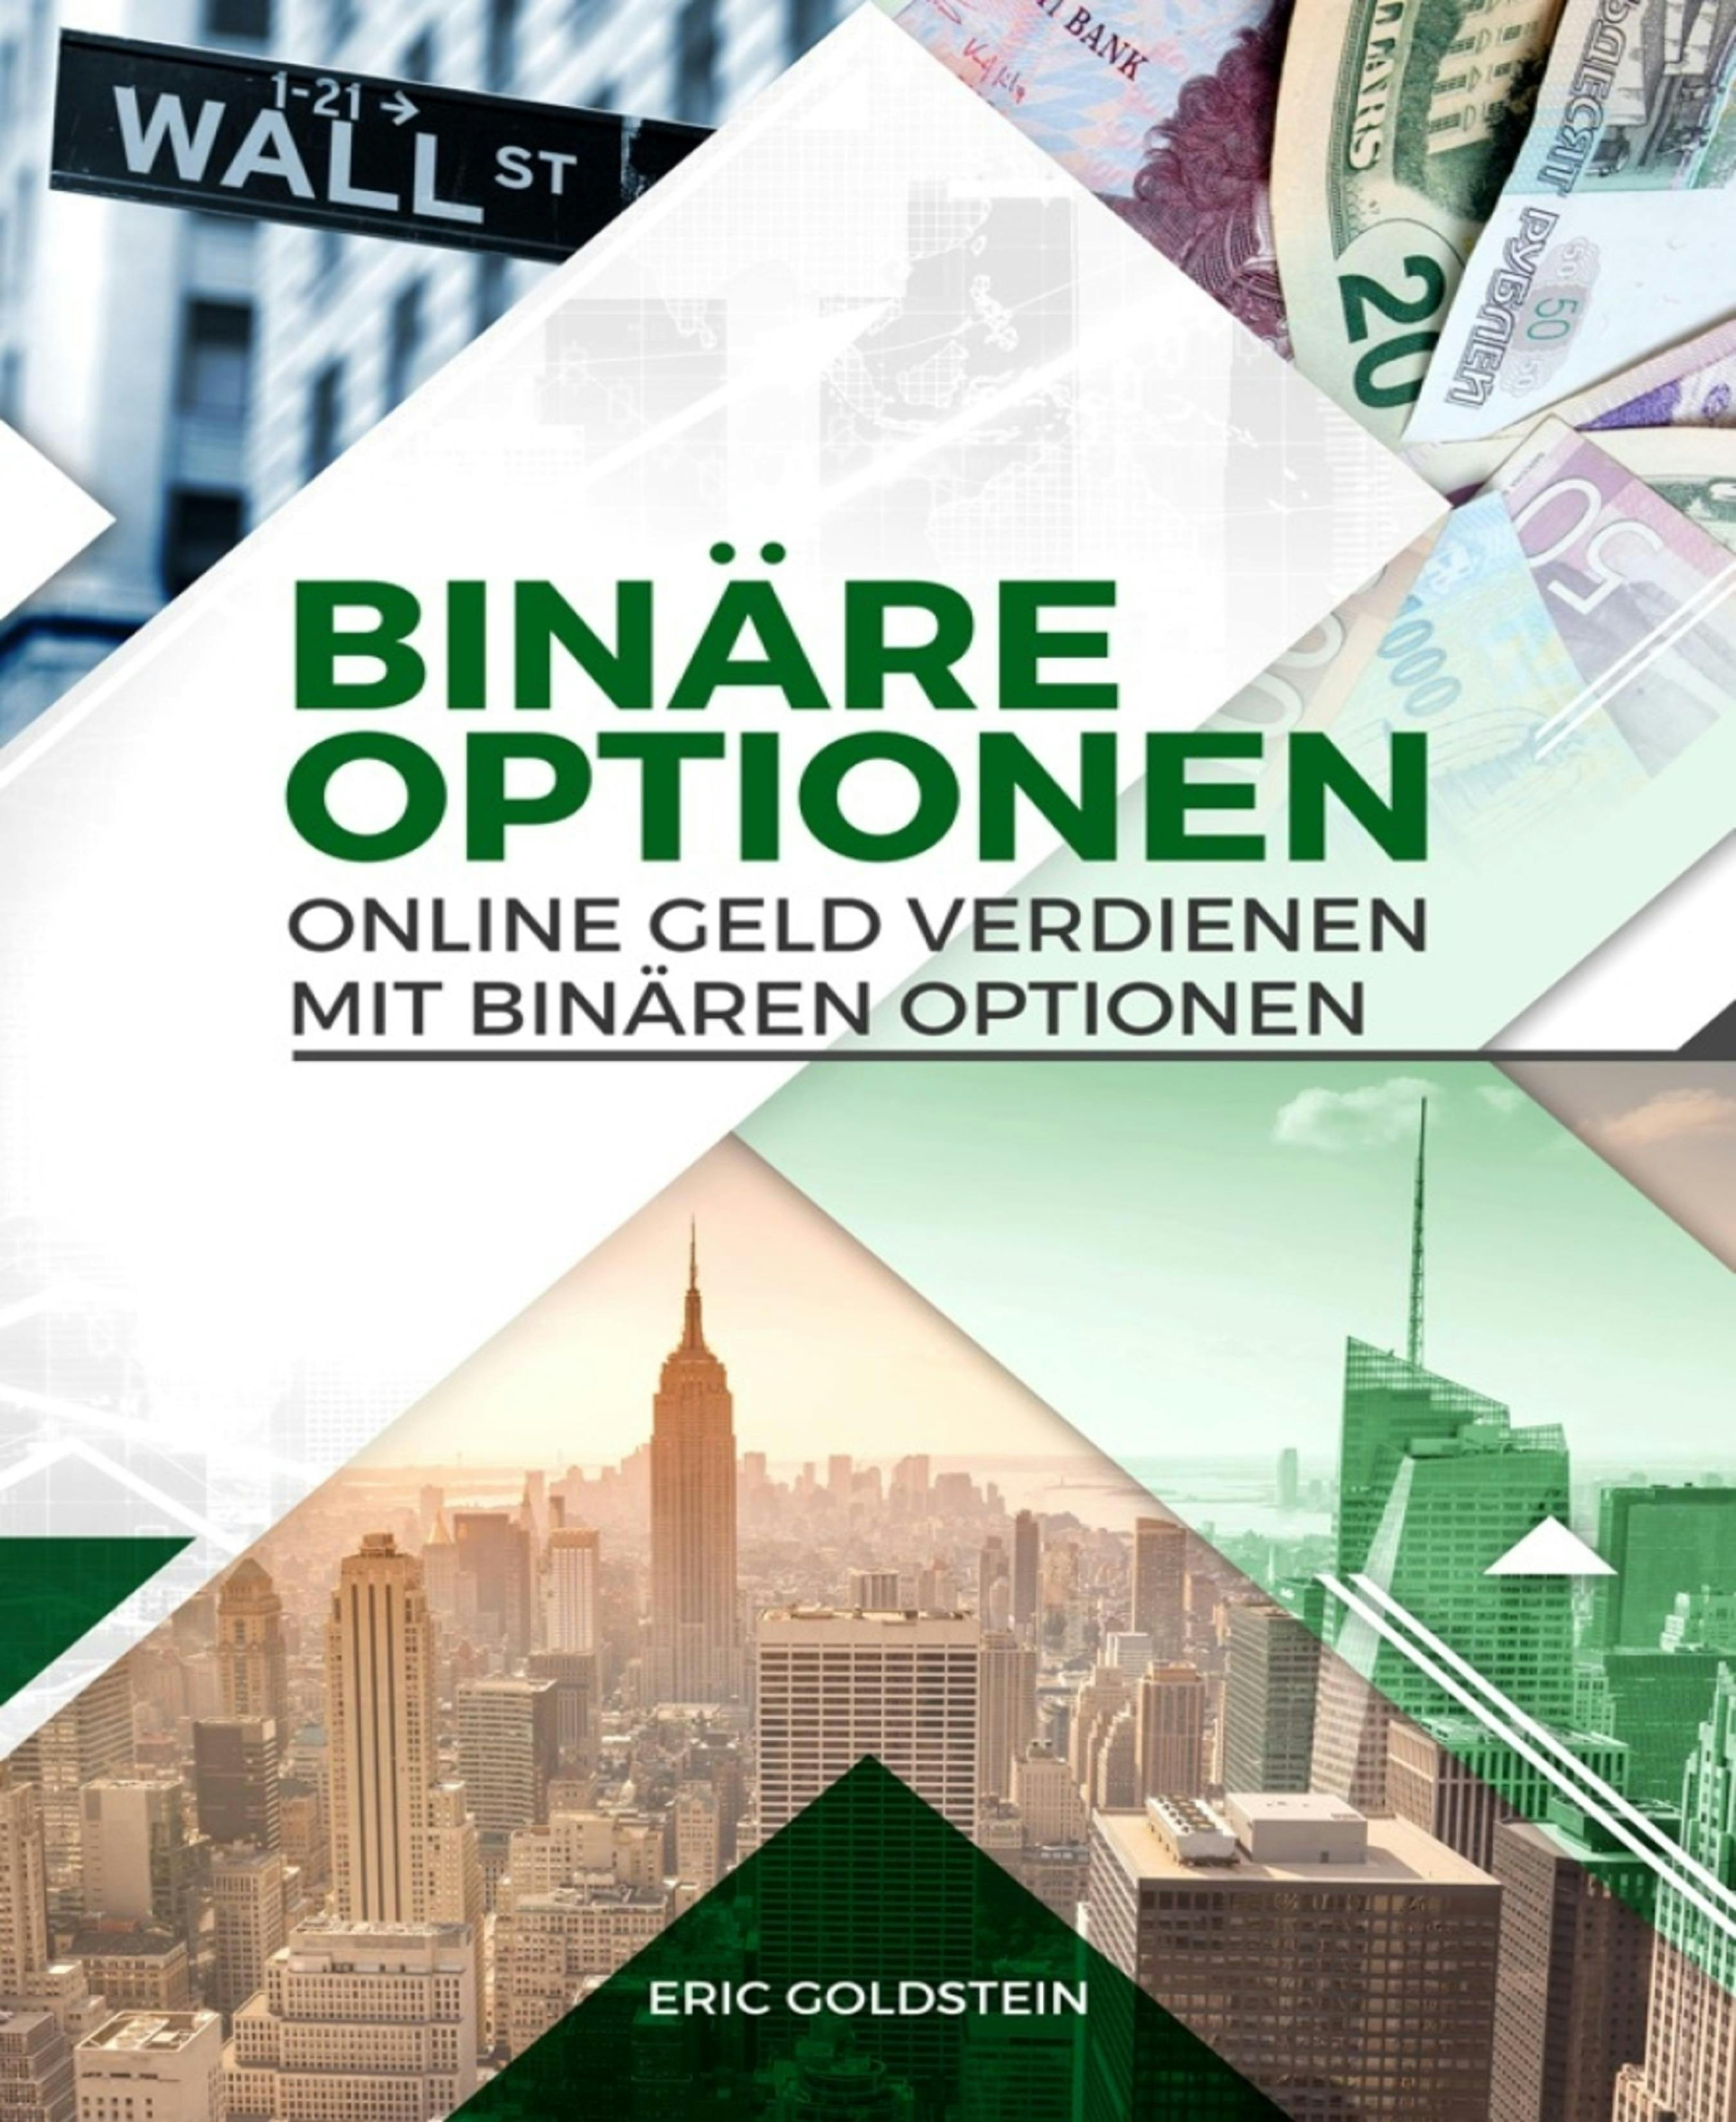 Online Geld verdienen mit Binären Optionen: (Trading, Binäre Optionen für Anfänger, Aktienhandel, Aktien, Geld verdienen, Online Business) - Eric Goldstein